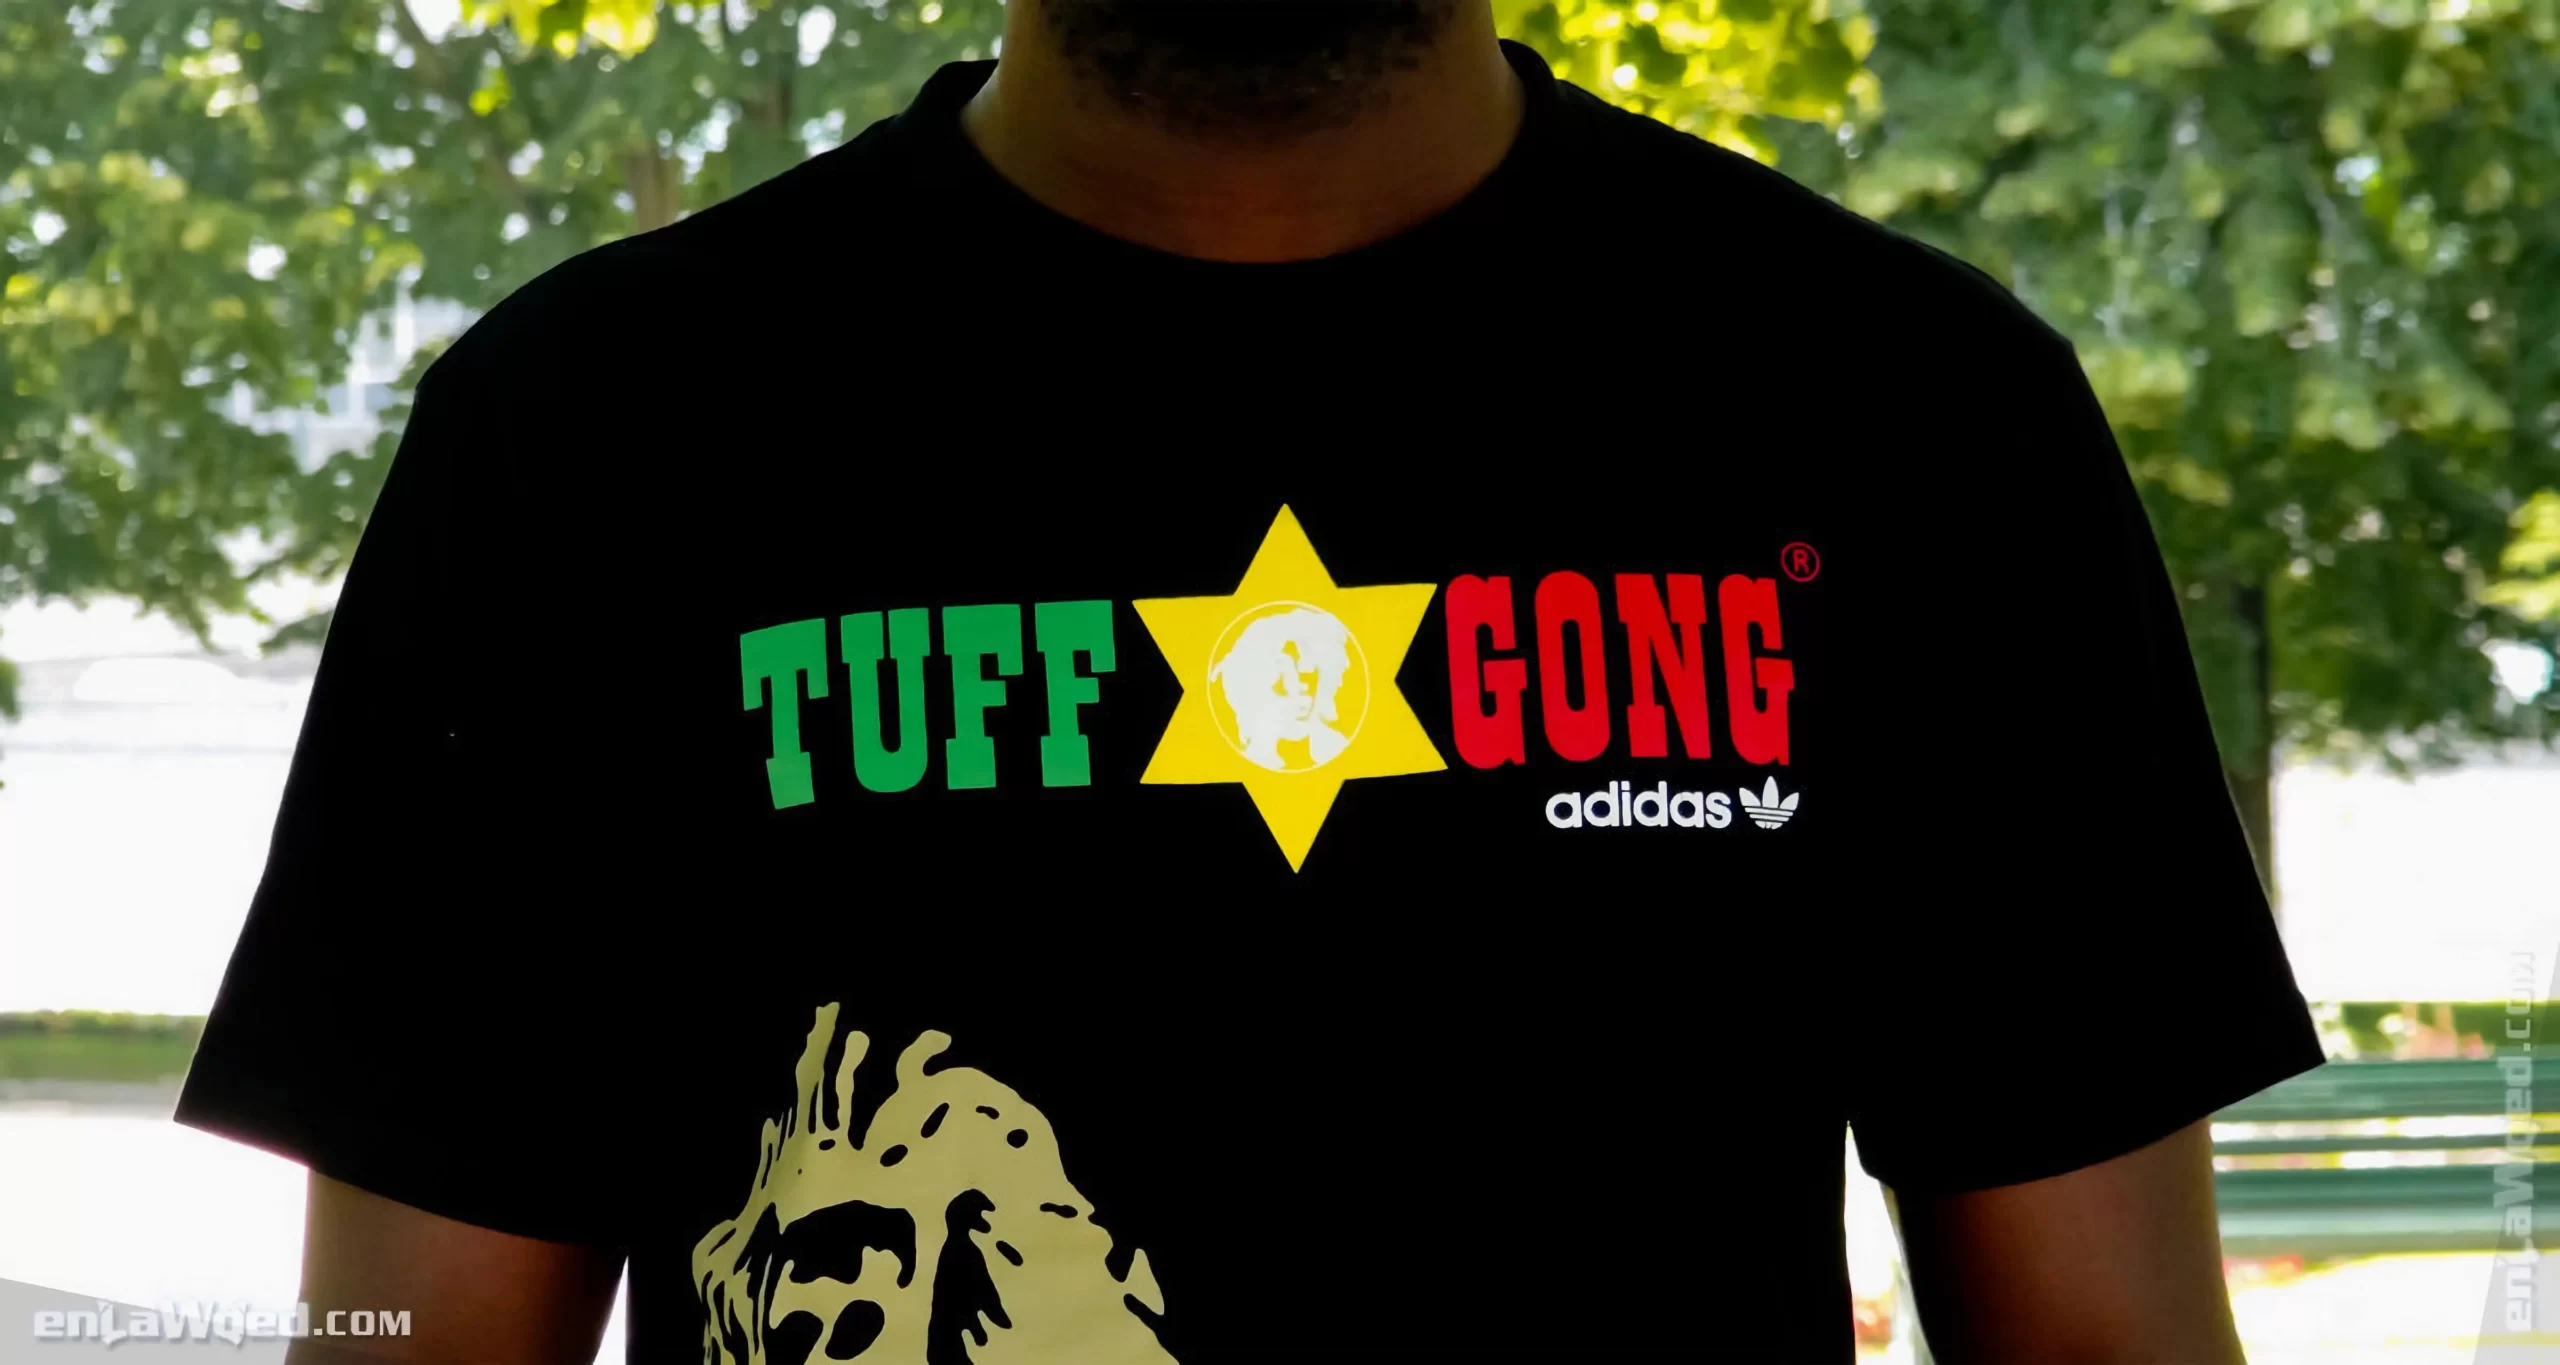 Men’s 2007 Bob Marley SMILE Tuff Gong T-Shirt by Adidas: Fine (EnLawded.com file #lmch6guuhzv7zrejag9)